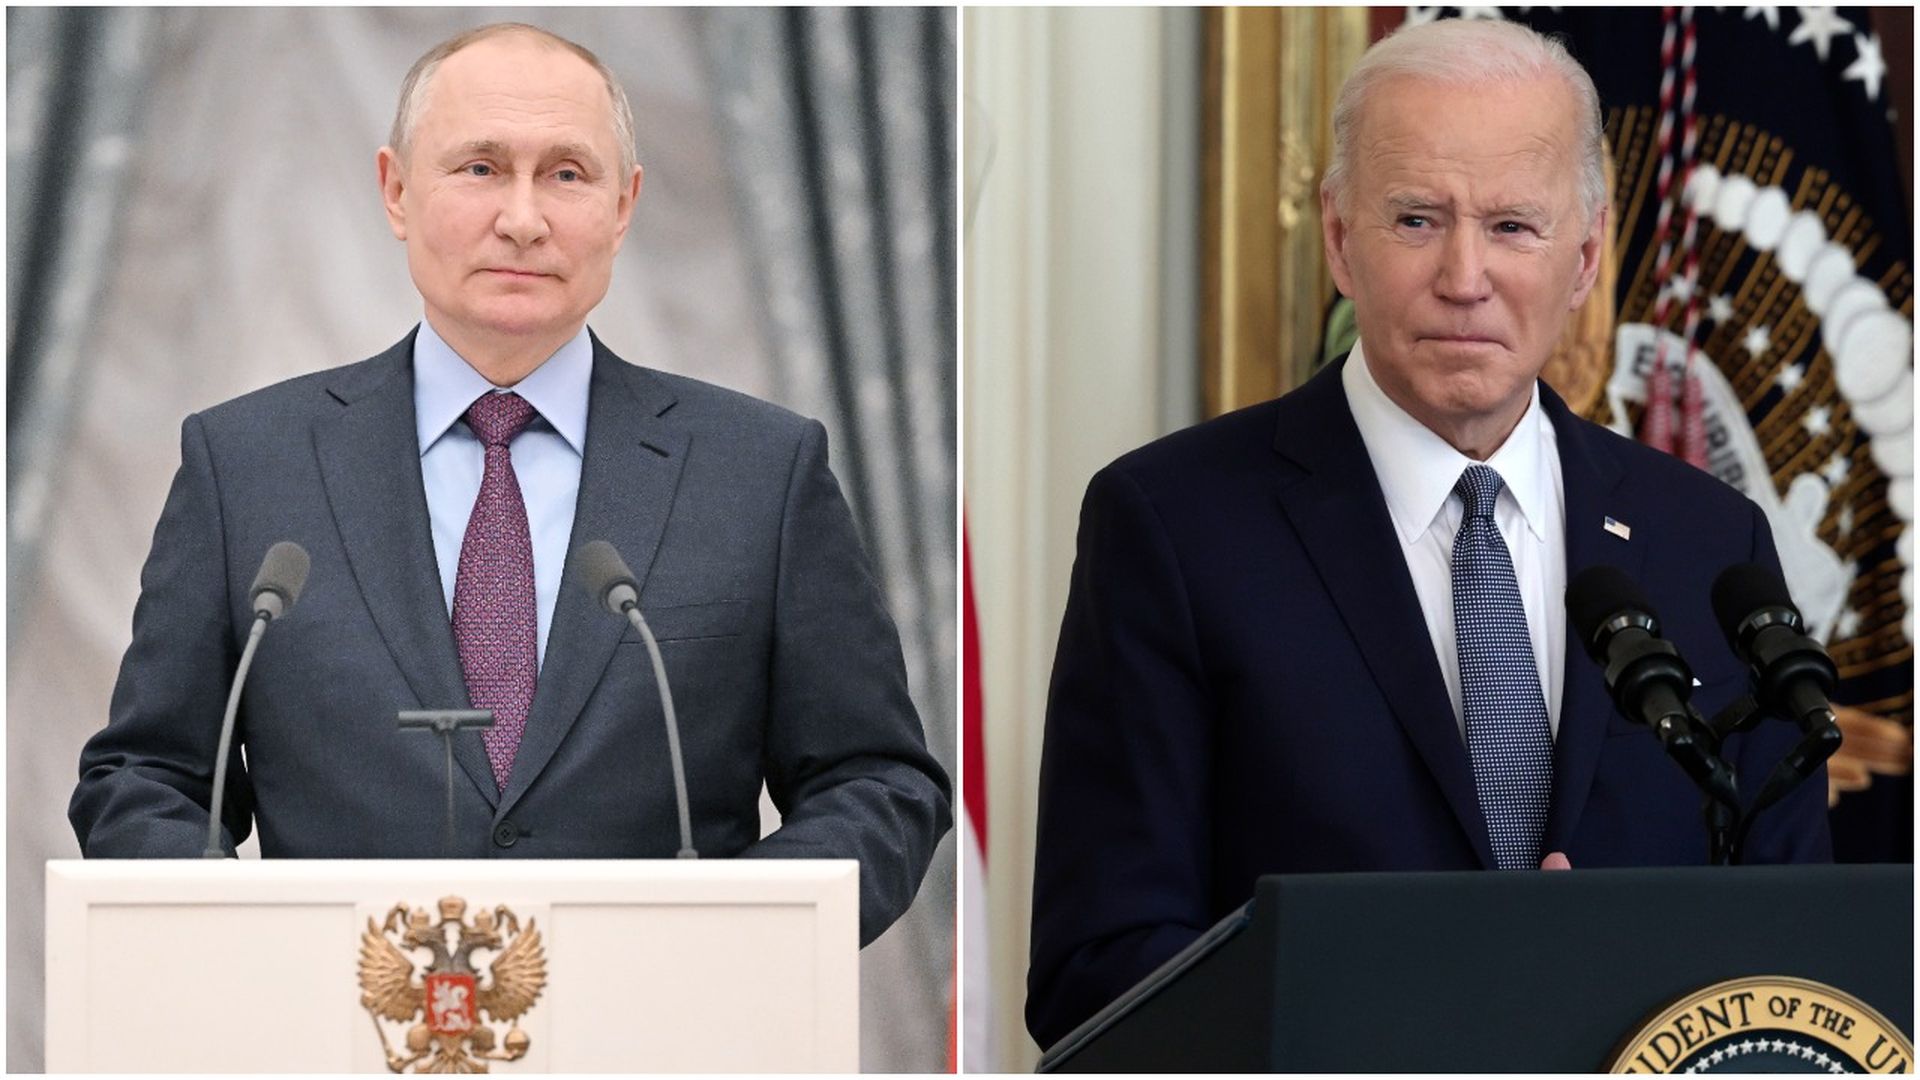 Photo of Vladimir Putin speaking on the left and Joe Biden speaking on the right